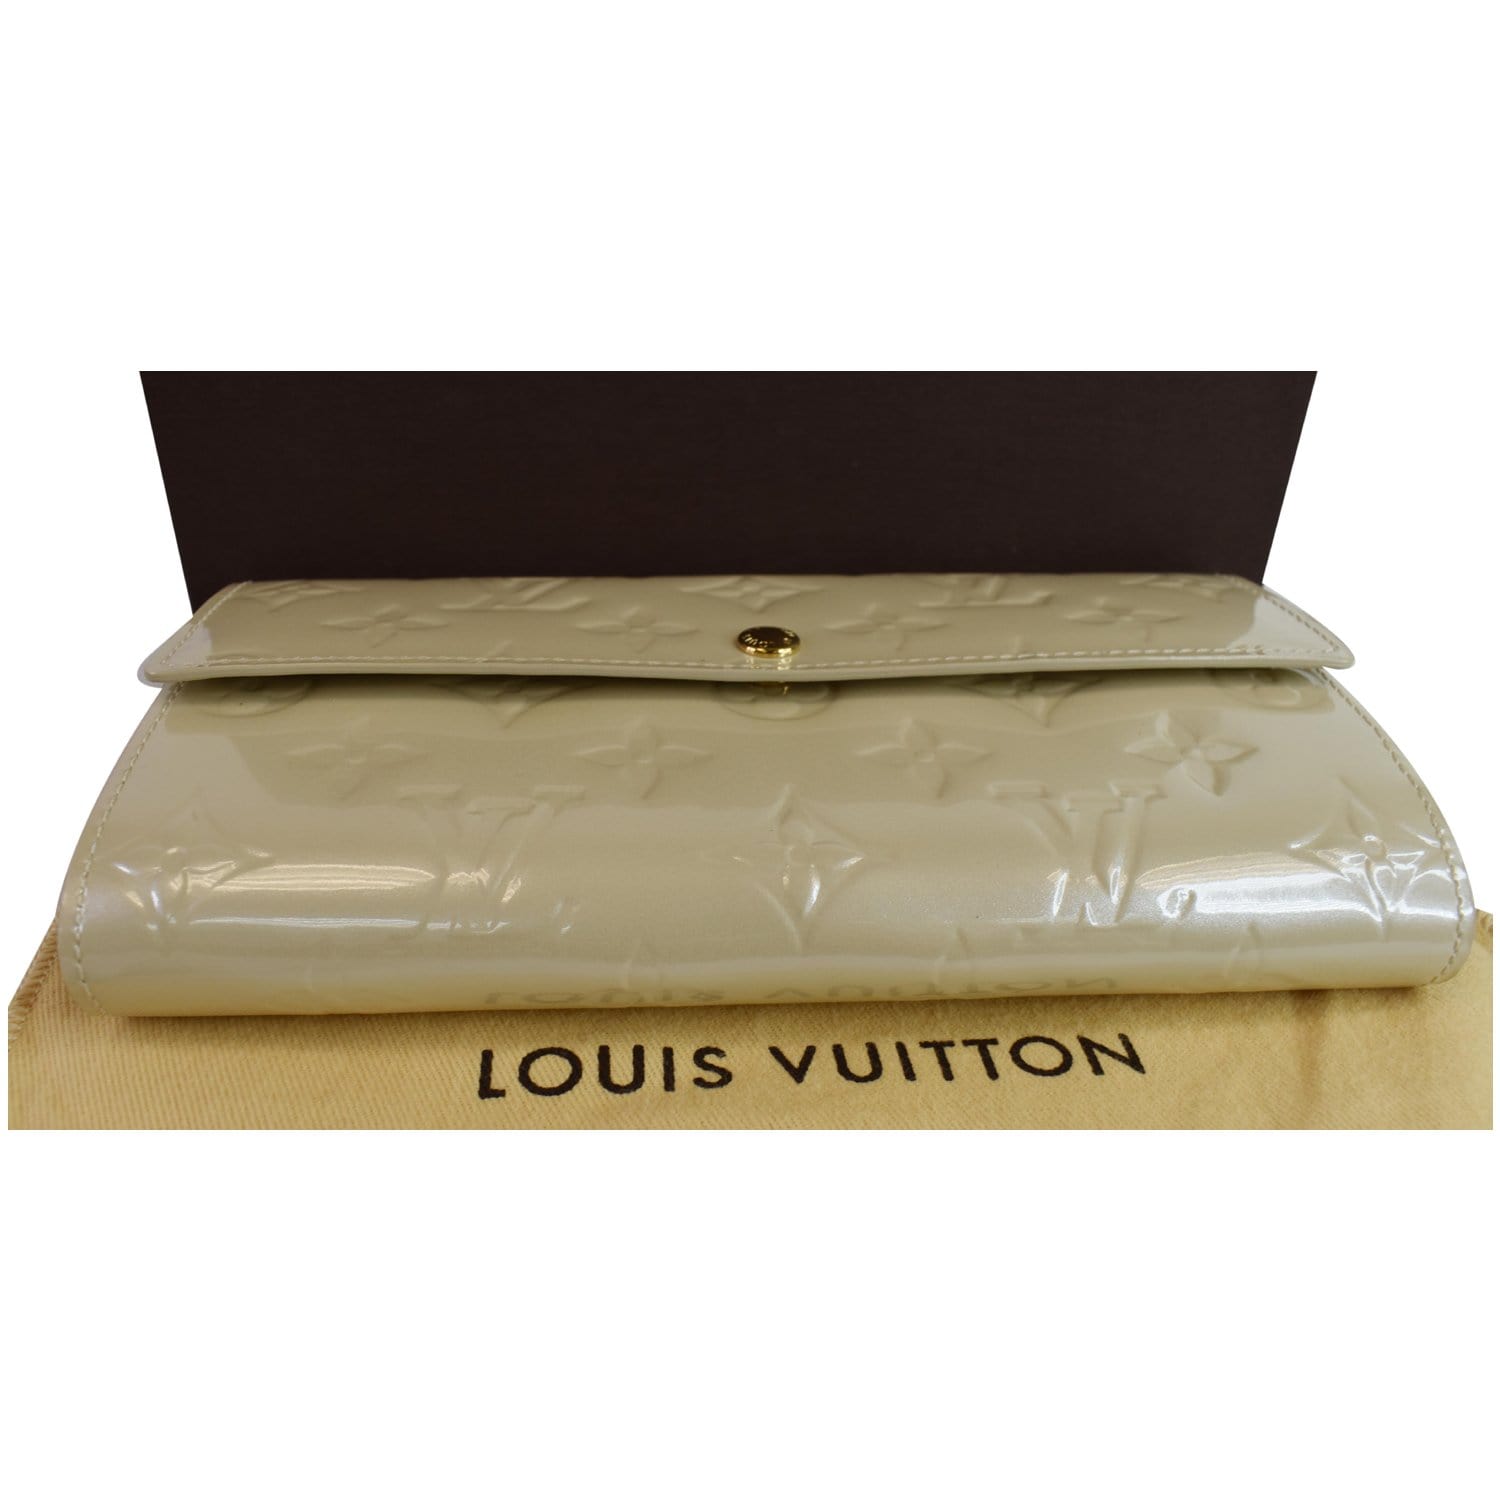 Louis Vuitton Beige Poudre Monogram Vernis Sarah Wallet